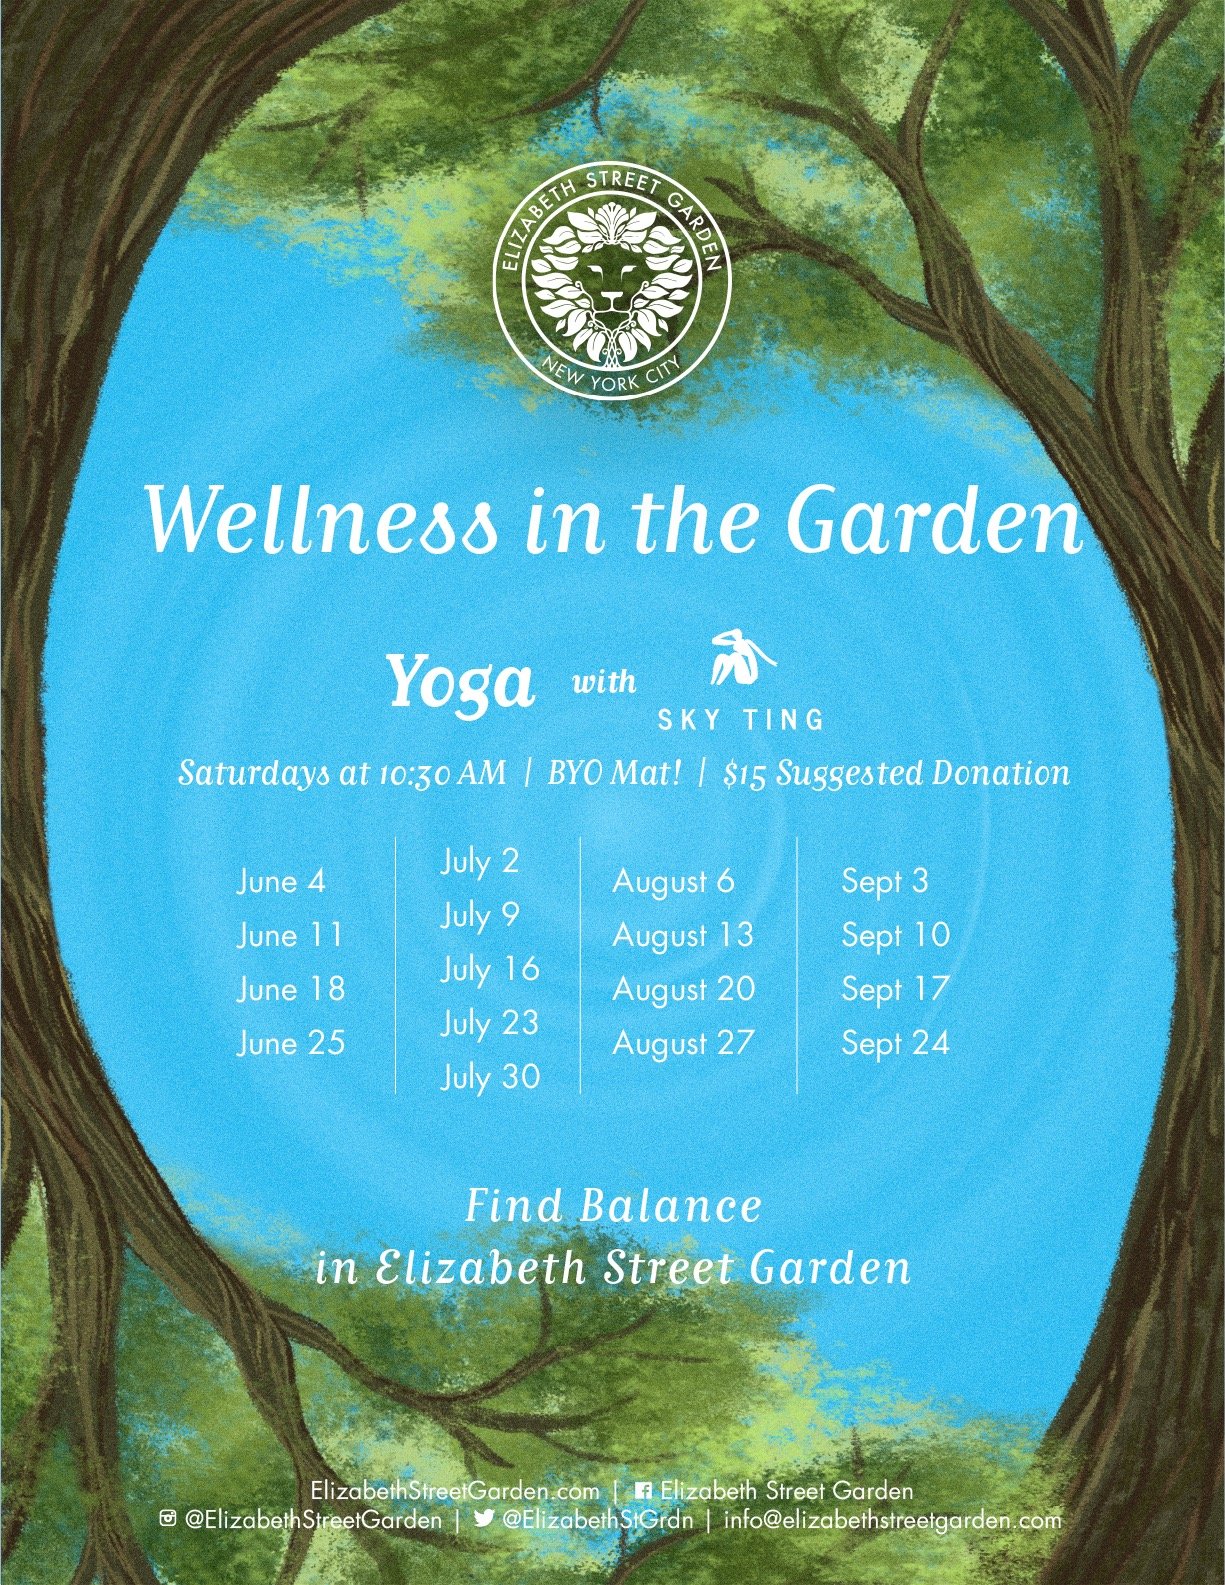 Elizabeth Street Garden - Official Website, Calendar